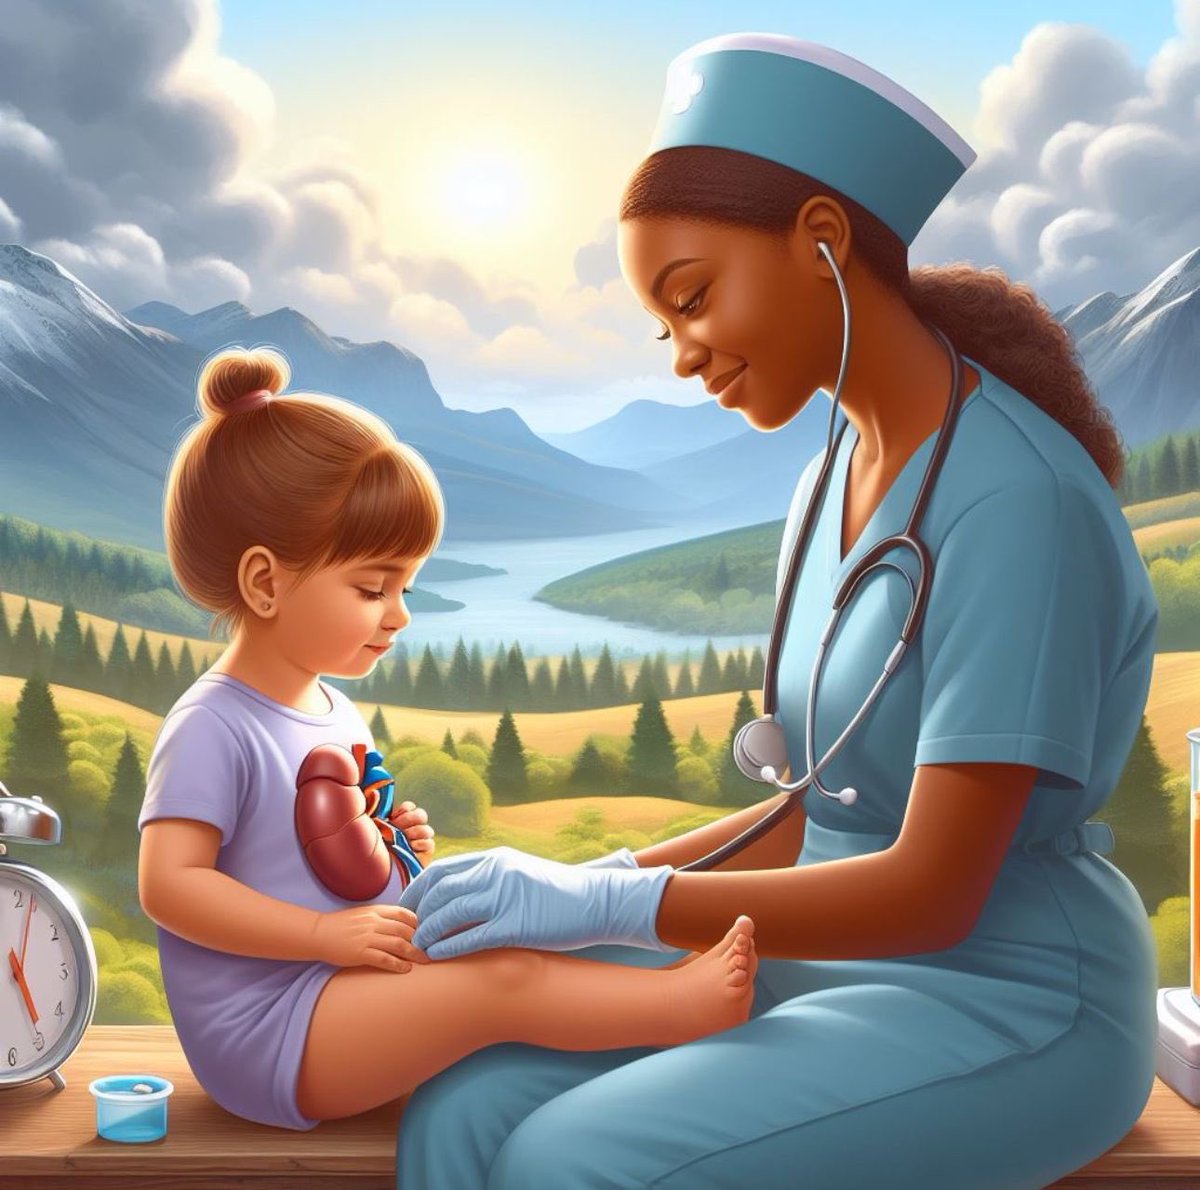 Un feliz día de la enfermera. 👩🏻‍⚕️ Una profesión que hace posible el milagro del trasplante renal. Gracias por todo el cuidado ♥️♥️♥️ #NurseDay #diainternacionaldelaenfermera #DiaInternacionalDeLaEnfermeria #trasplante #transplant #saludrenal #kidney